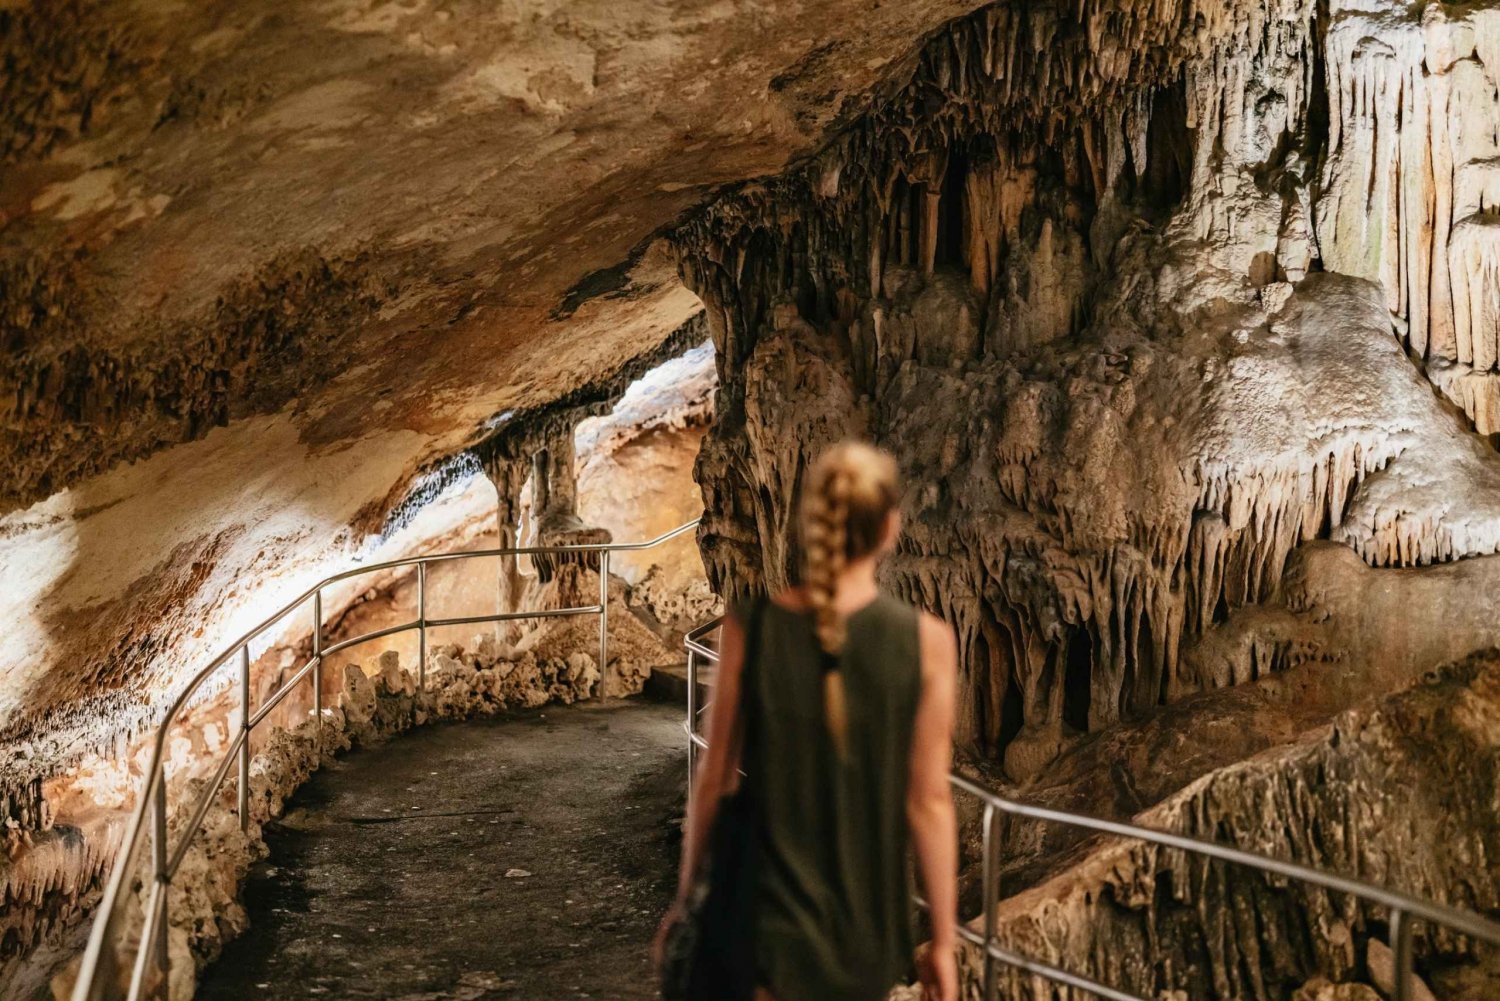 Maiorca: Grotte del Drago e Grotte di Hams opzionali